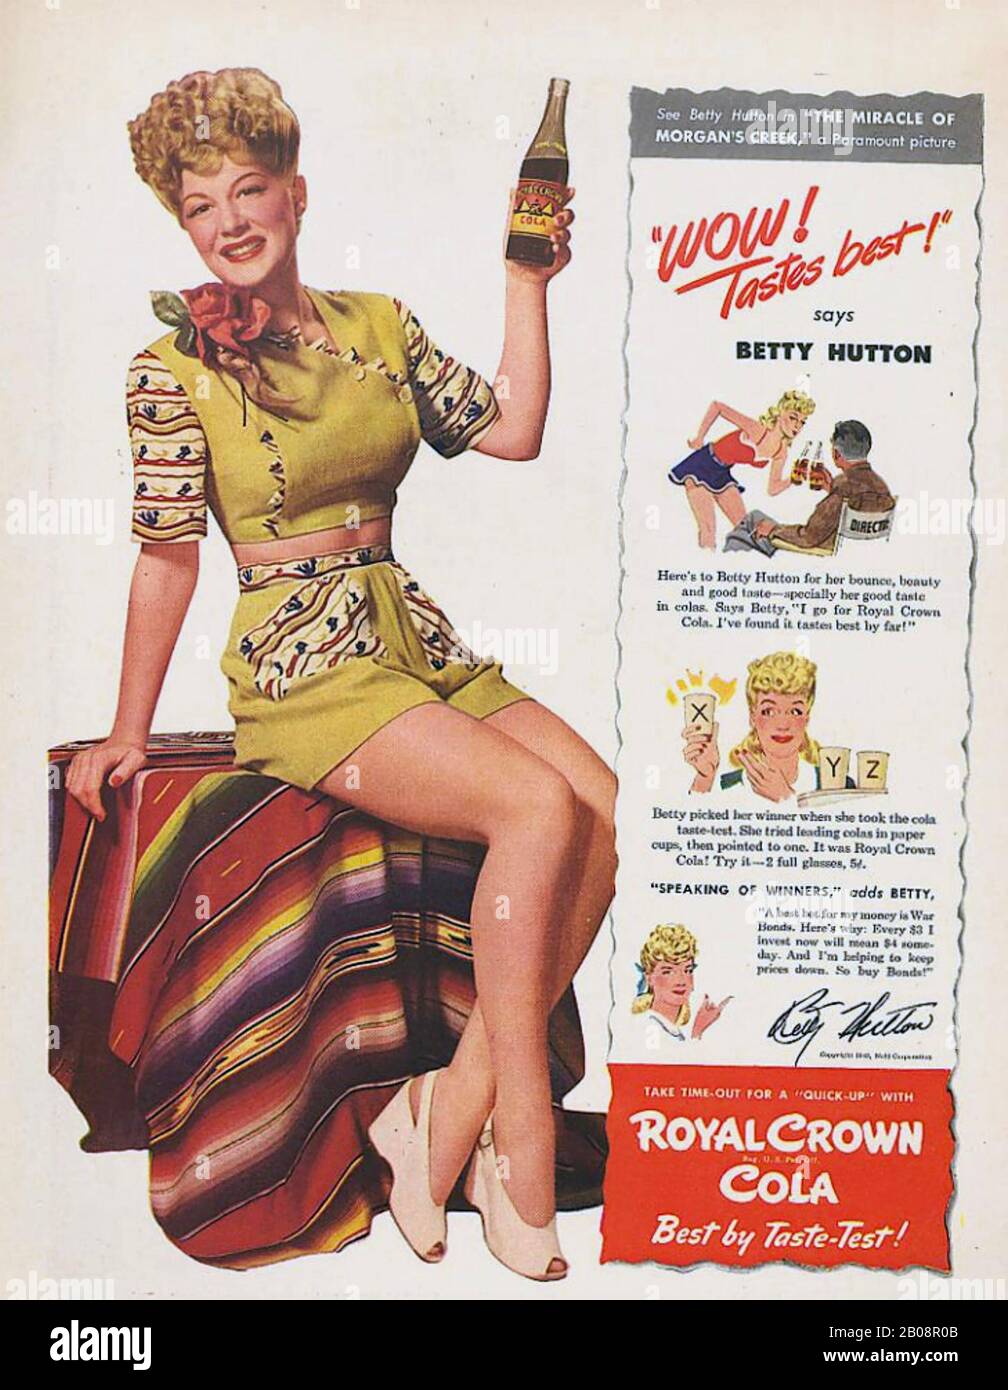 Betty HUTTON (1921-2007) actriz y bailarina cinematográfica estadounidense que promueve su película de 1944 El Milagro de Morgan's Creek junto con Royal Crown Cola Foto de stock